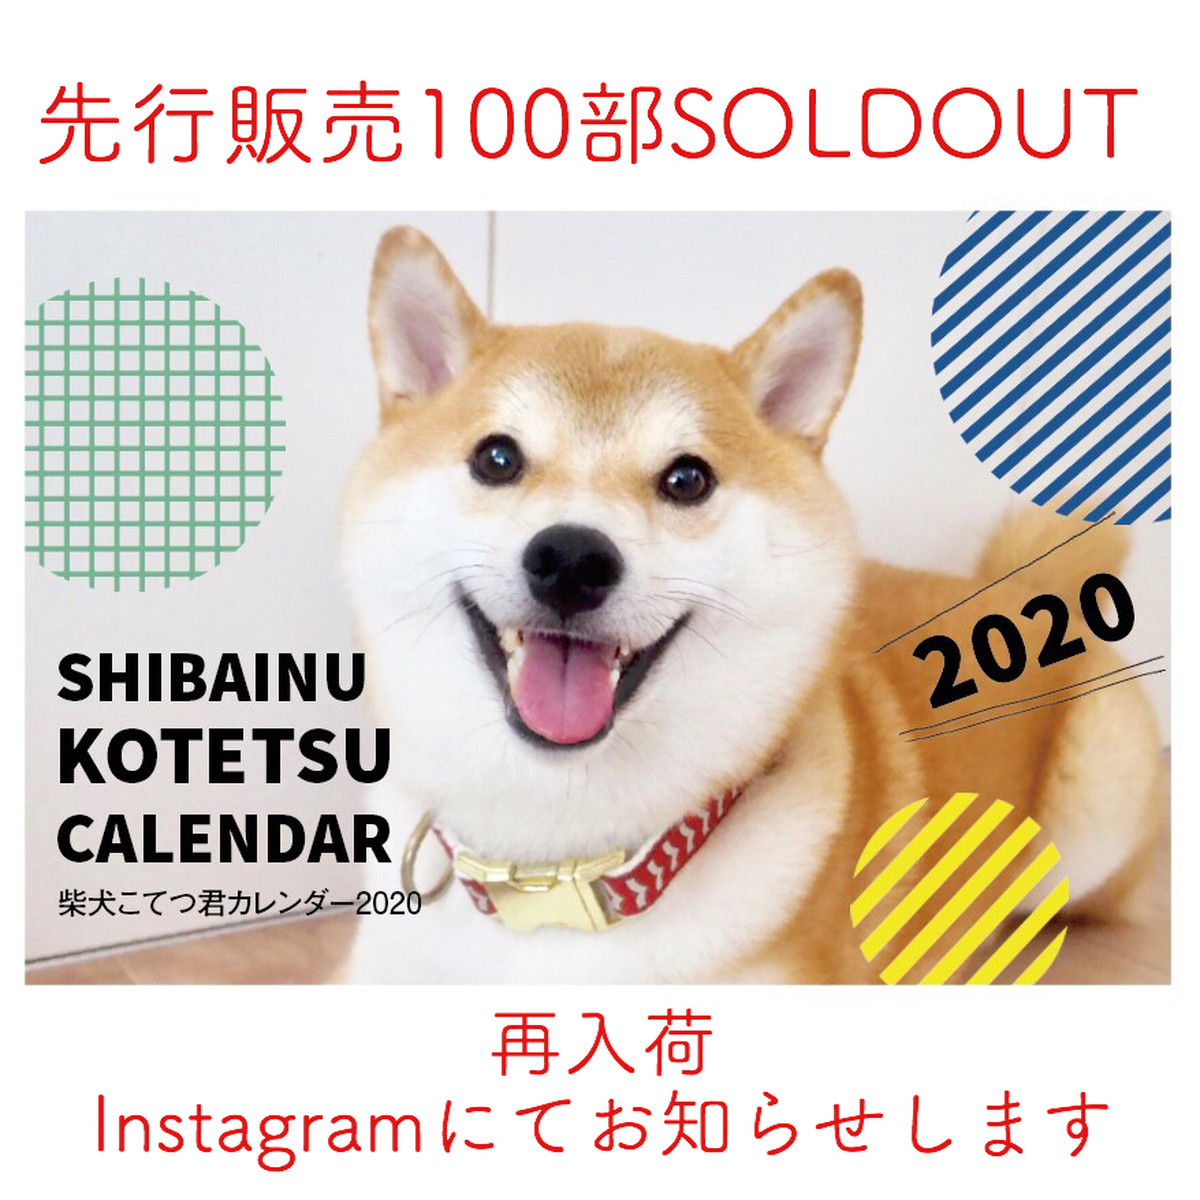 送料無料 一次販売 柴犬こてつ君卓上カレンダー年 16枚セット Shibainu Kotetsu Calendar Asanayuna